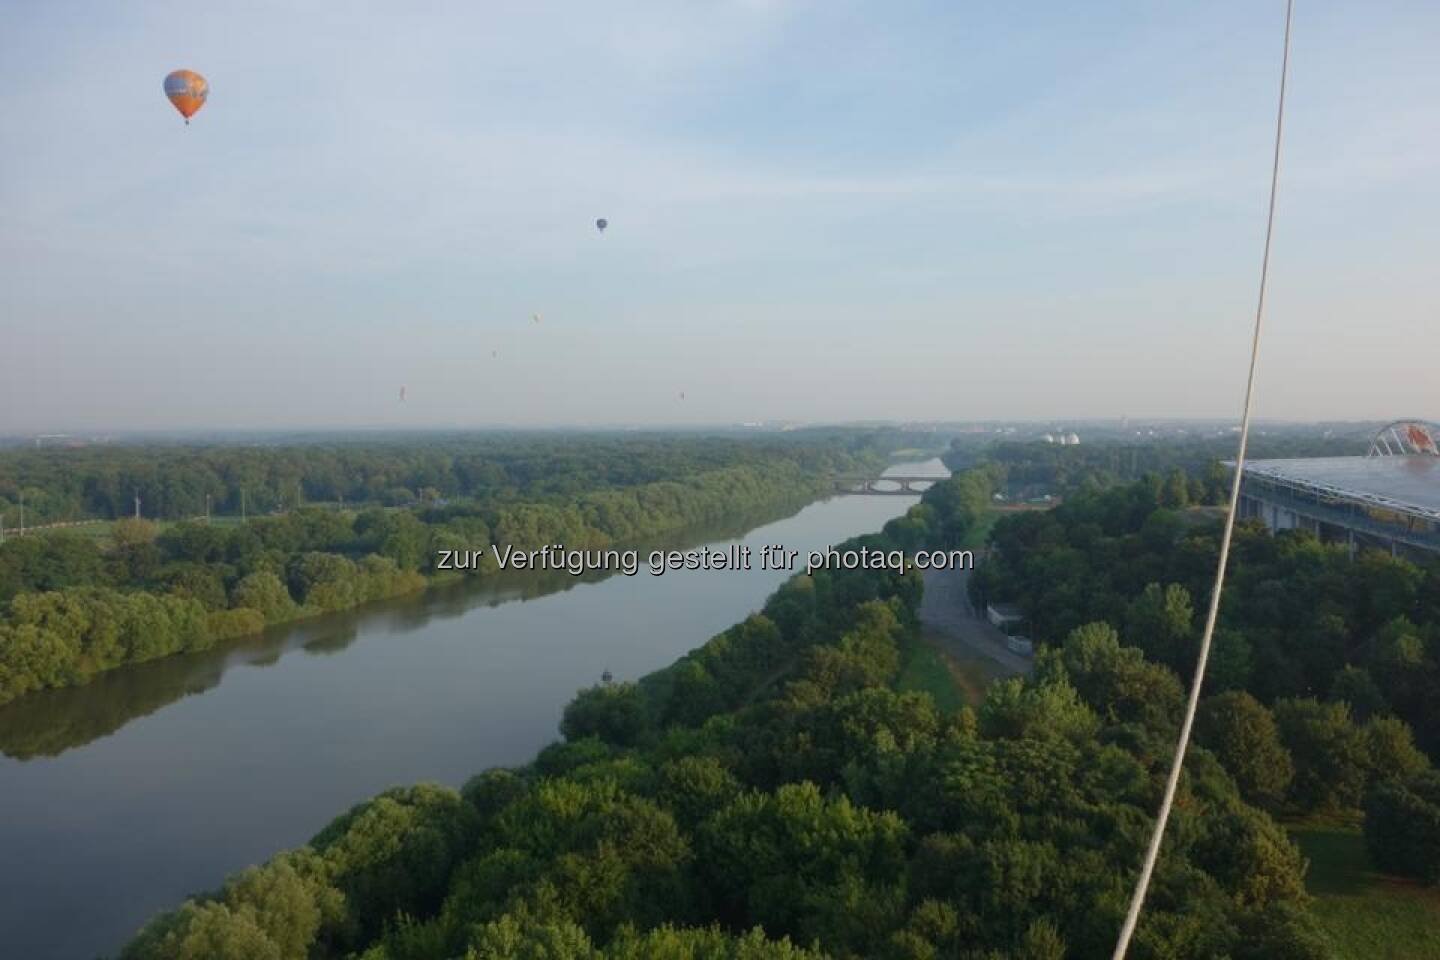 Eine wunderschöne Ballonfahrt nach Richtung nordwest, mit Überquerung des Flughafens Leipzig-Halle. Danke an sie DFS für die unkonventionelle Handhabung von 20 Ballonen über dem Platz (Dirk Herrmann)